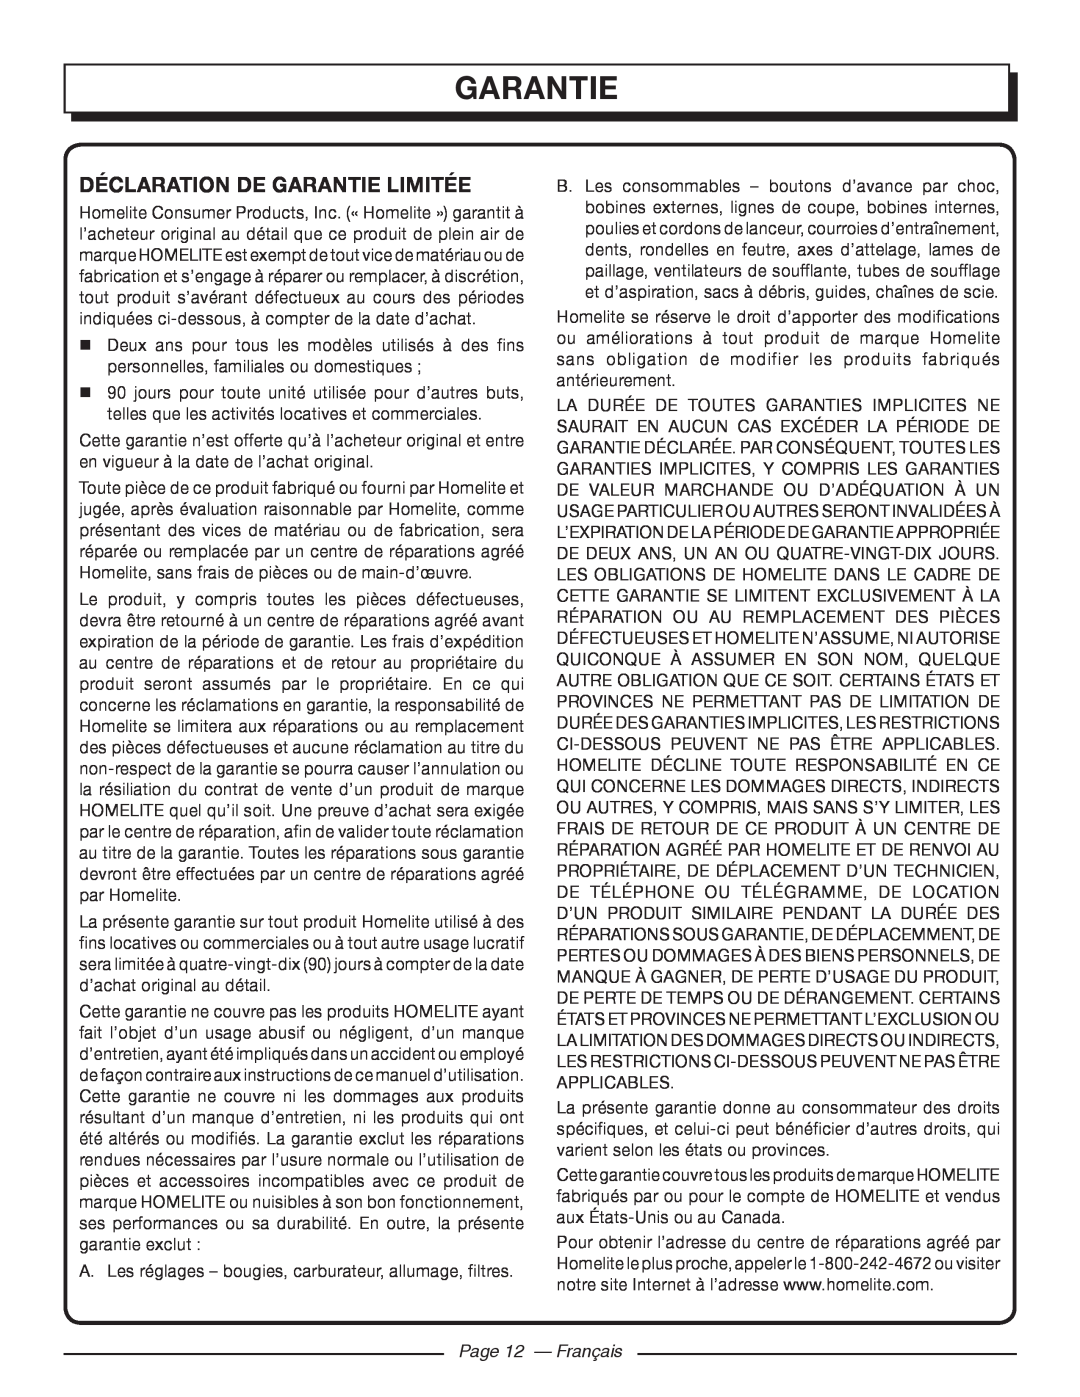 Homelite 26SS UT22650, 26CS UT22600 manuel dutilisation Déclaration De Garantie Limitée, Page 12 - Français 